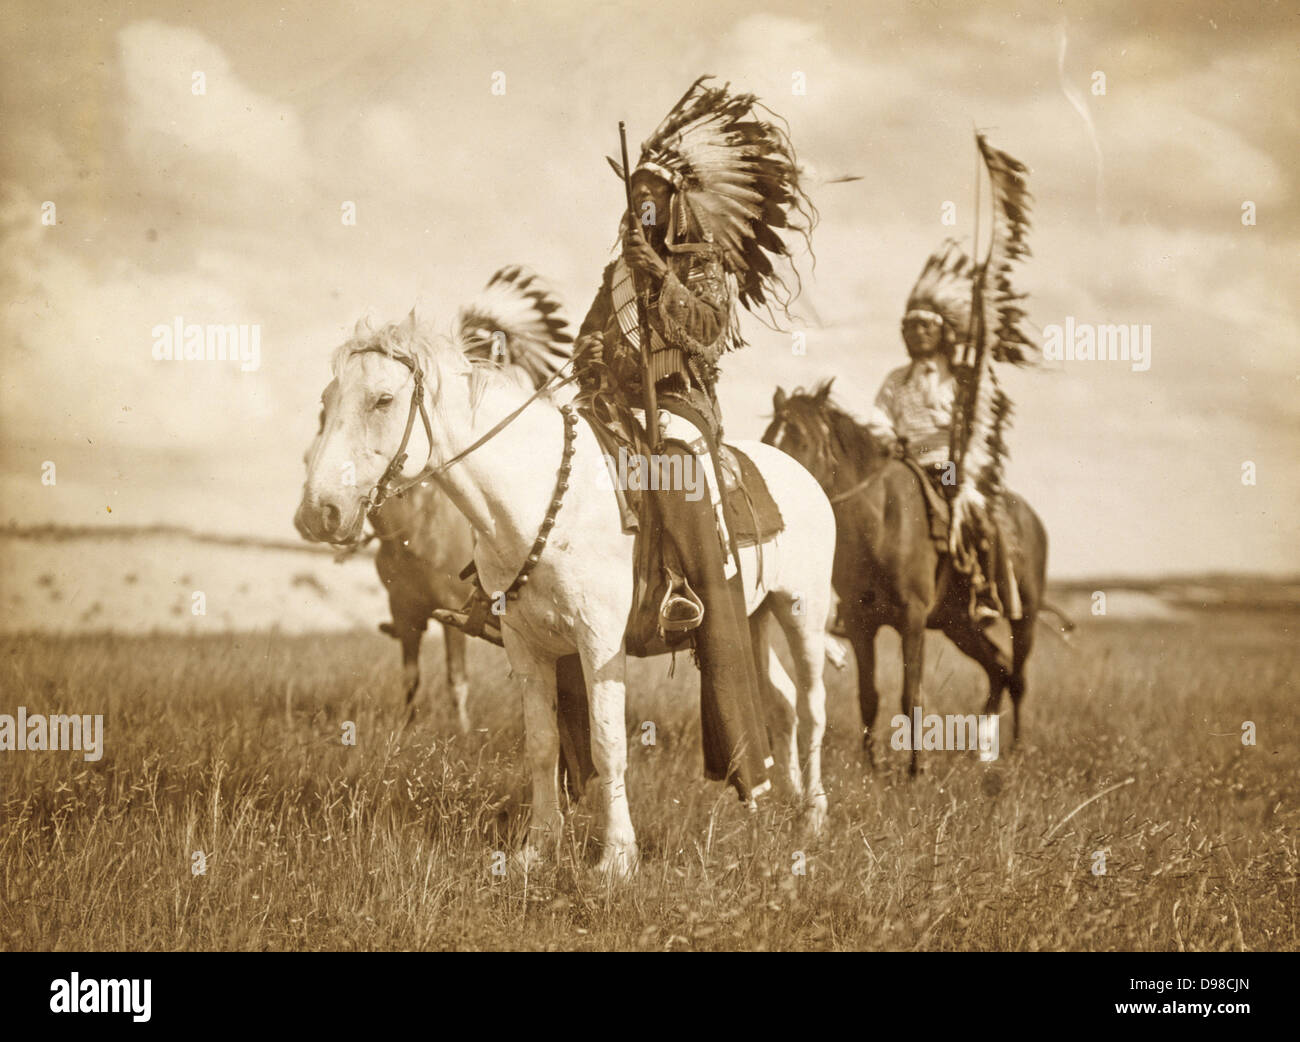 Drei indianische Häuptlinge auf Pferde und tragen Feder Kopfschmuck  montiert. C1890 zu fotografieren Stockfotografie - Alamy